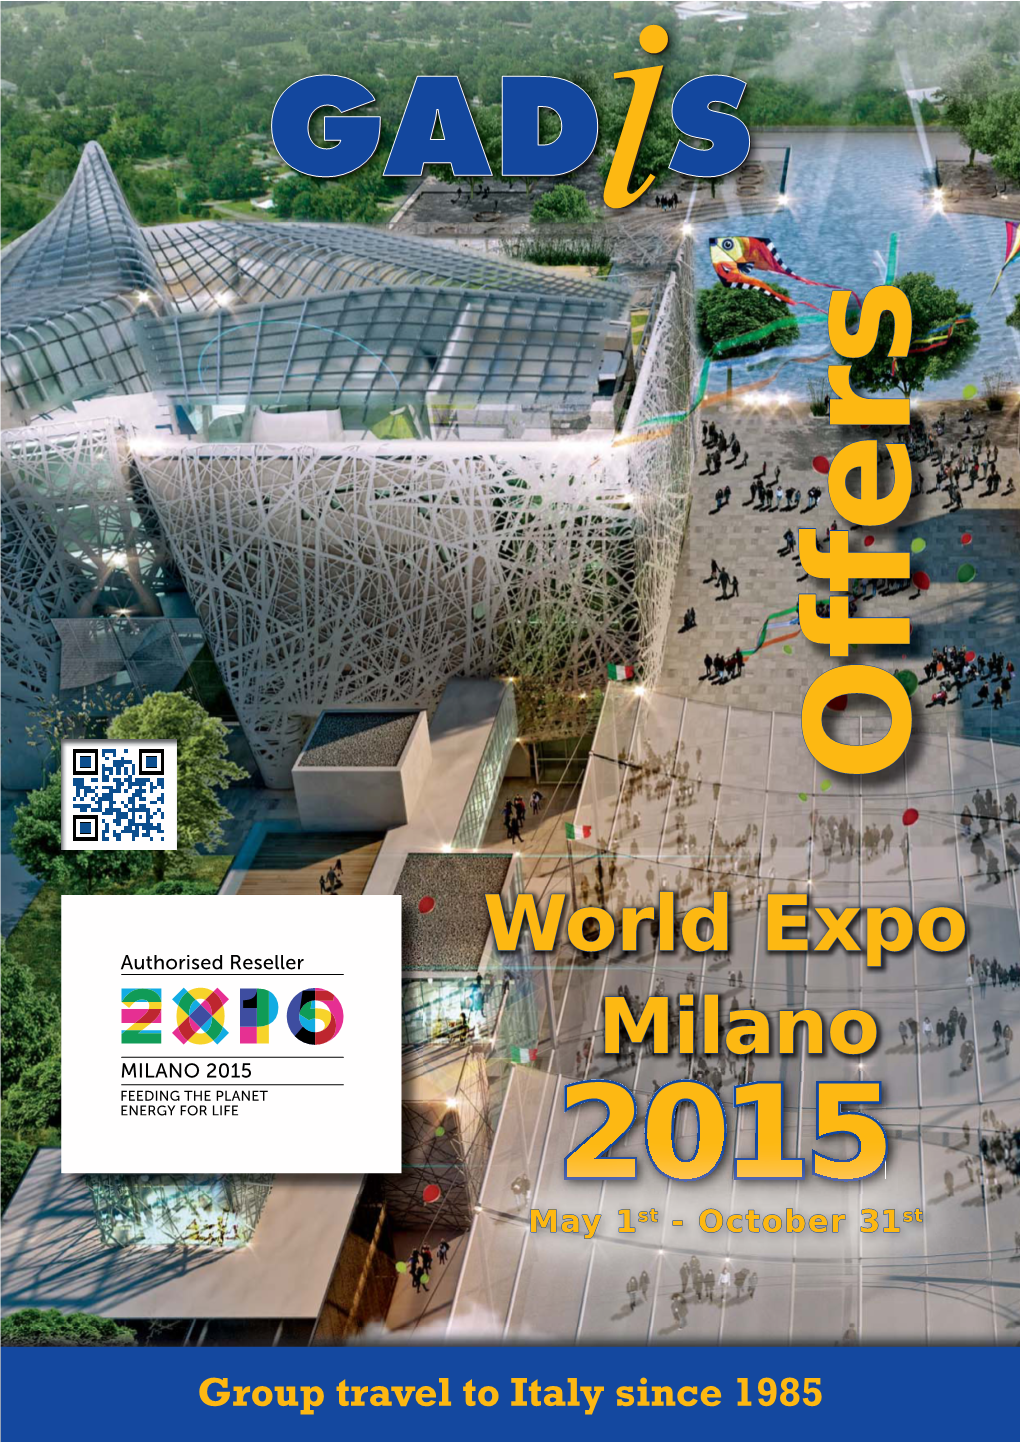 World Expo Milano 2015